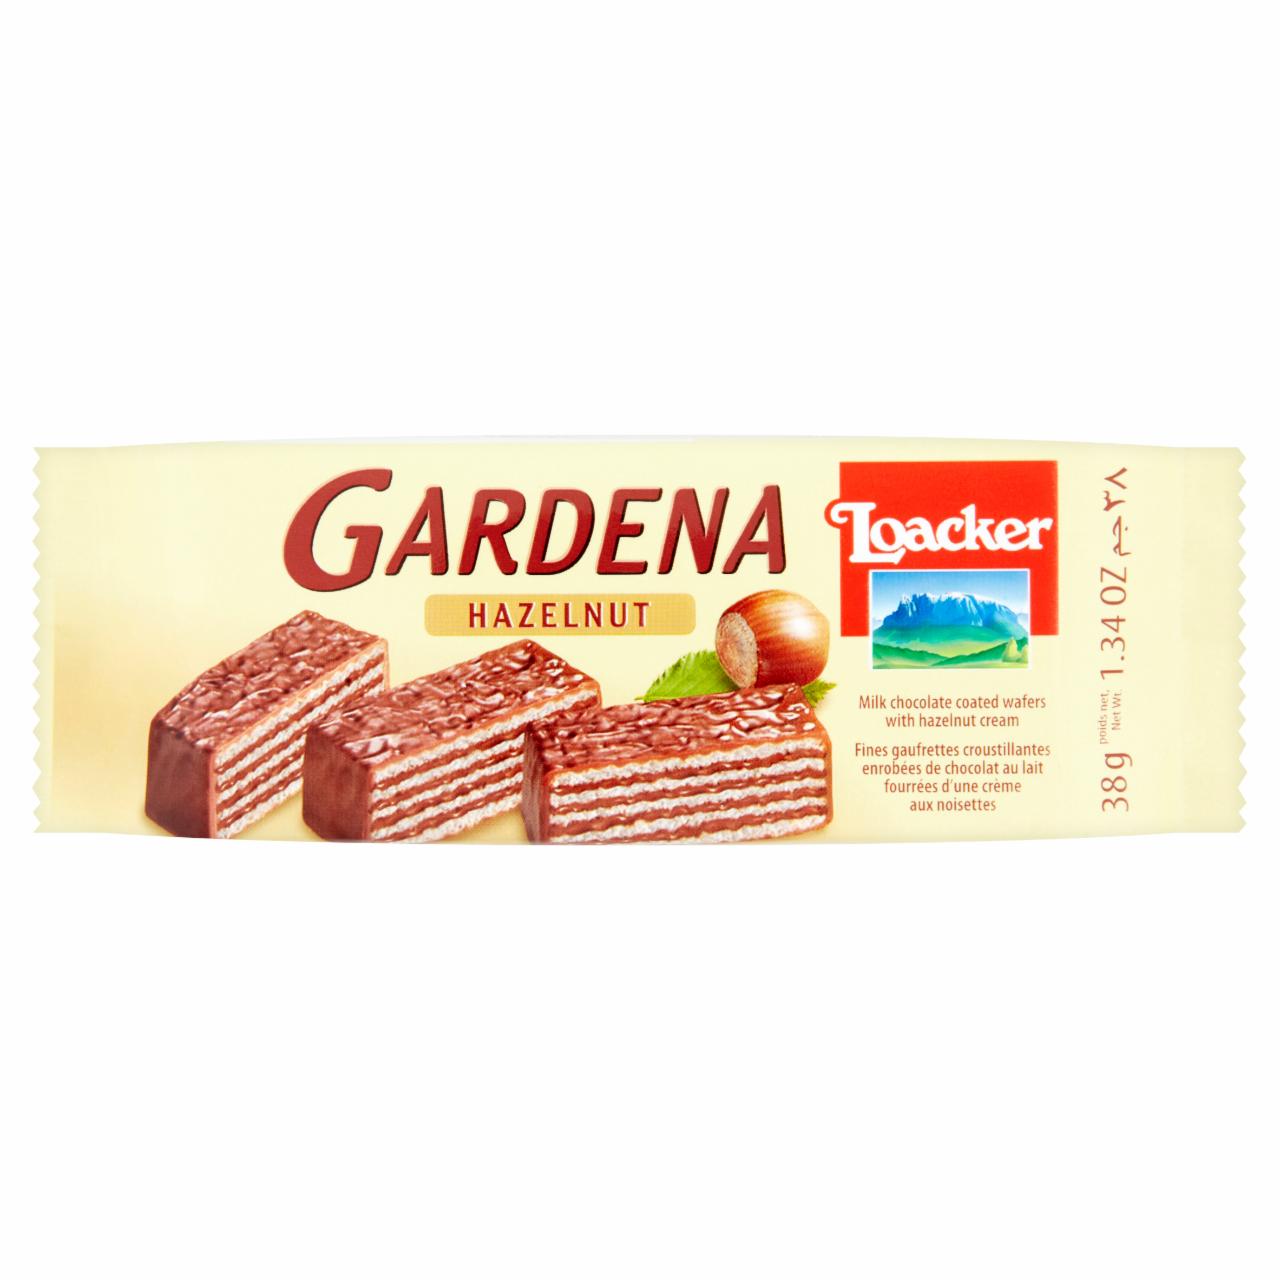 Képek - Loacker Gardena Hazelnut tejcsokoládéval bevont ostya mogyorókrém töltelékkel 38 g